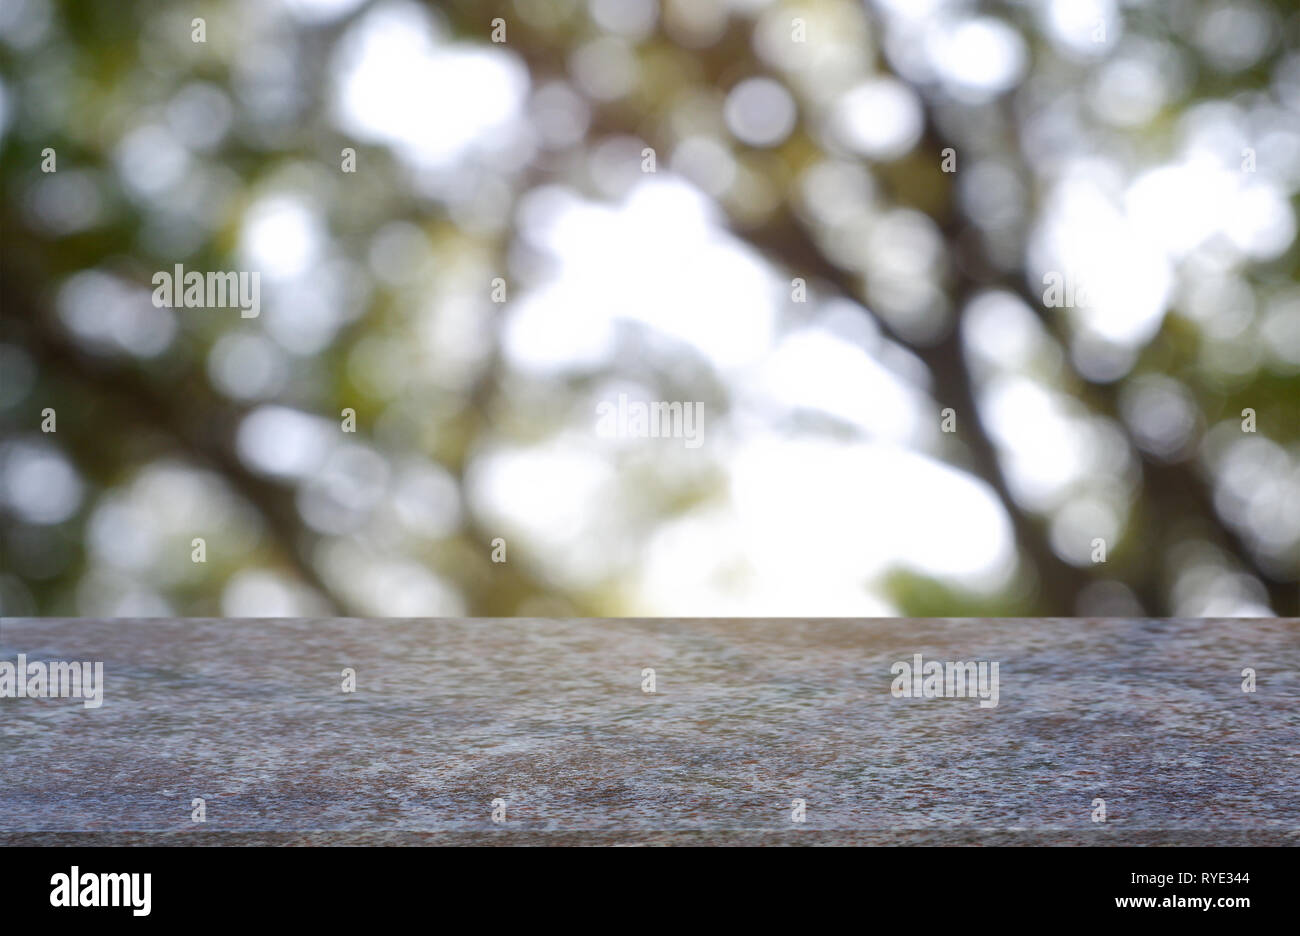 Leere marblestone Tisch vor der abstrakten verschwommen grünen Garten und Natur hellen Hintergrund. Für die Montage des Produkts angezeigt oder Key Visual Design legen Stockfoto